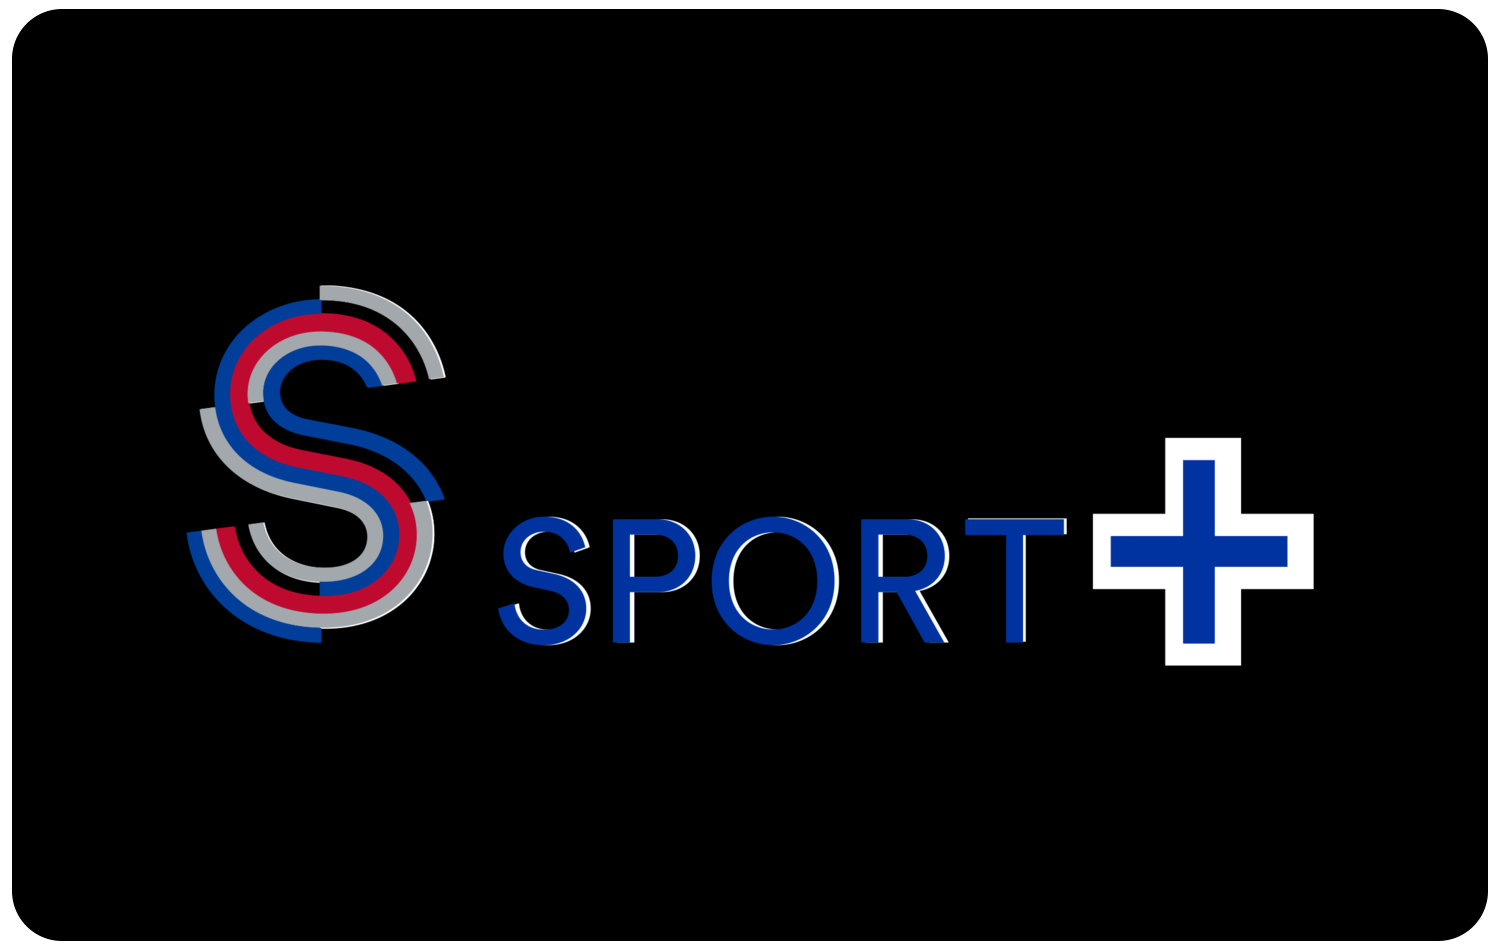 S Sport Plus. Sport Plus izle. Плюс логотип. S Sports Plus Canli. Sport plus canli izle